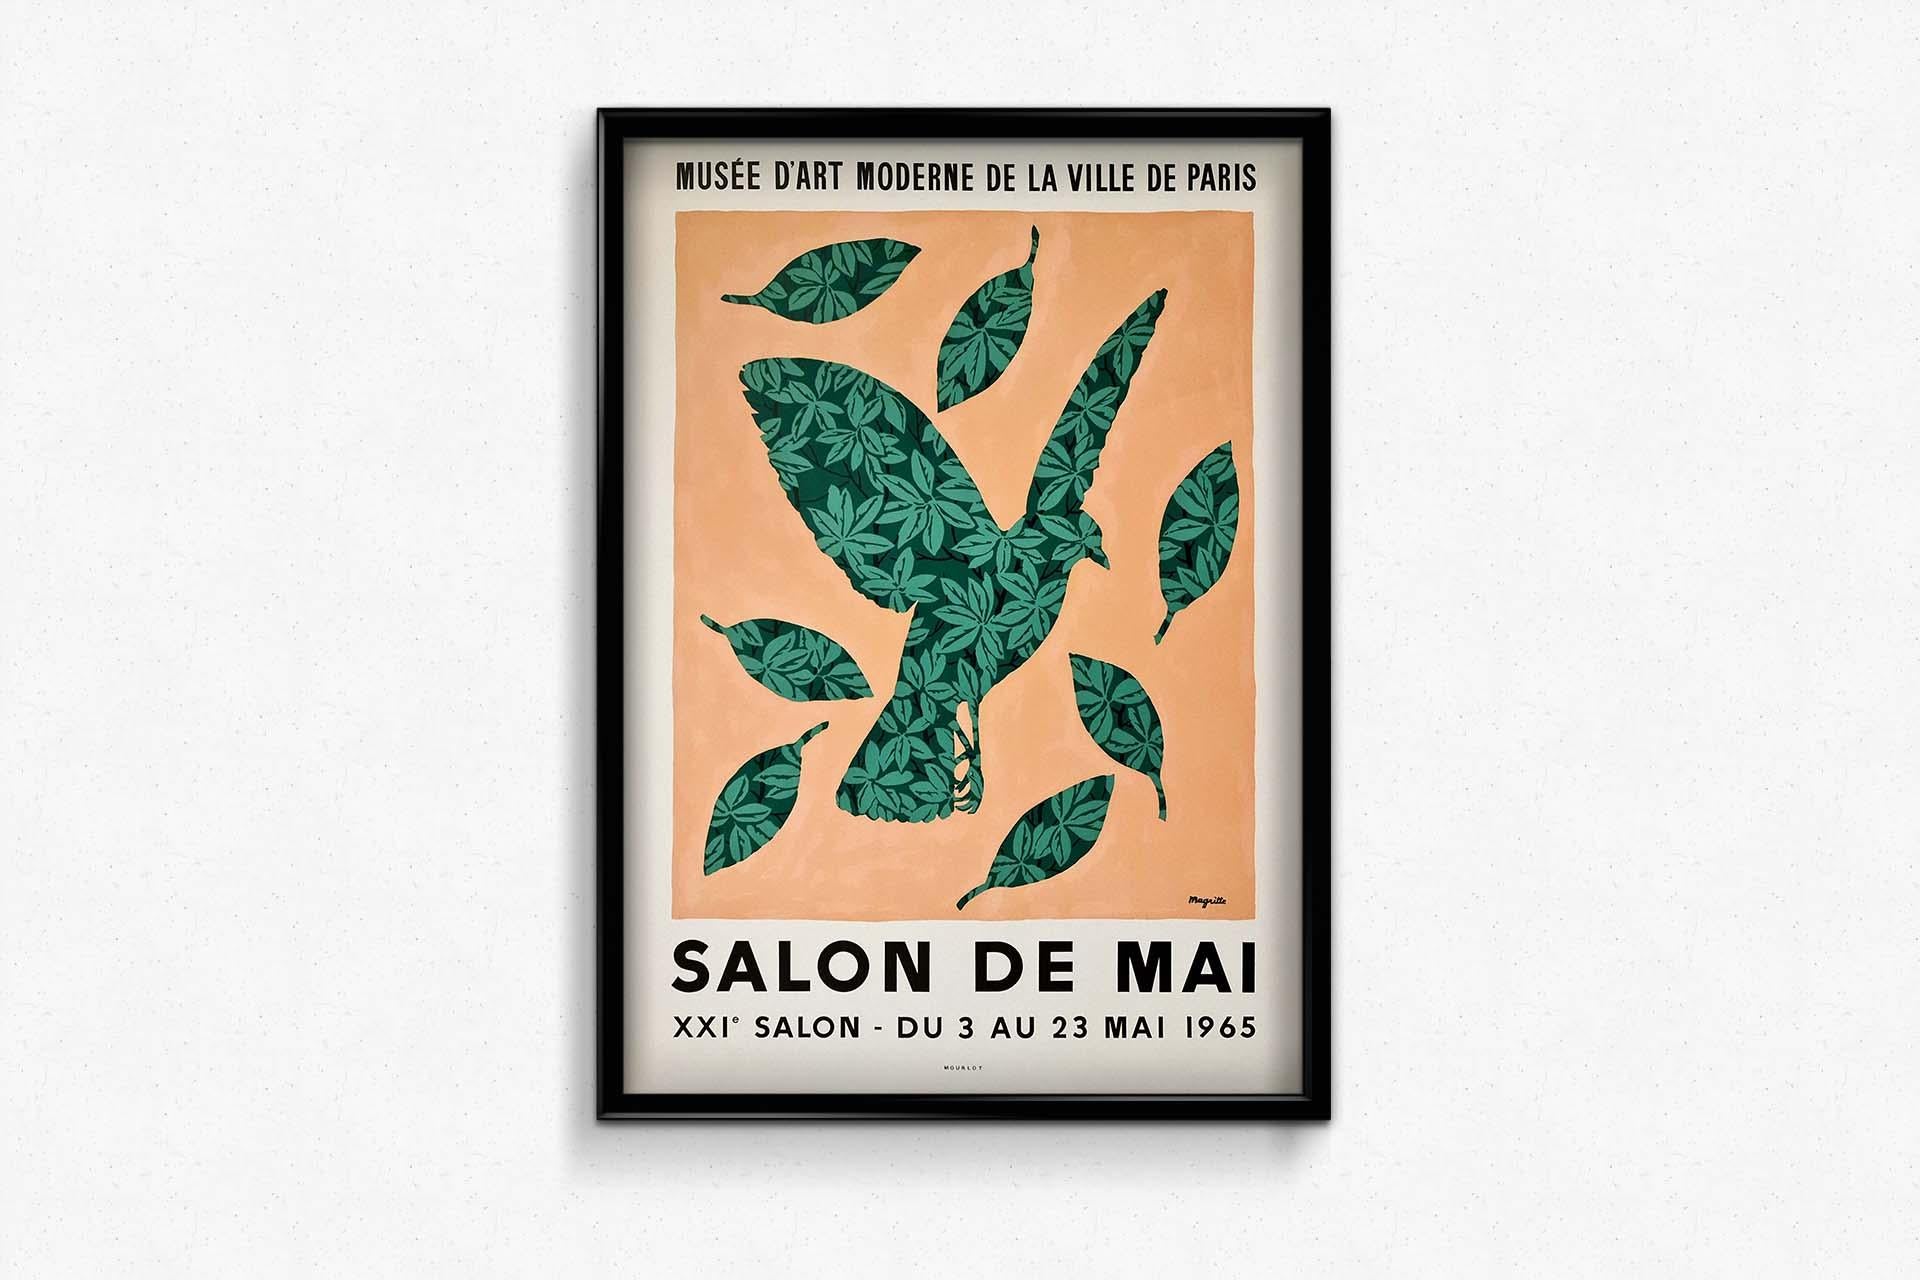 Magritte's original poster for the 1965 Salon de Mai - Musée d'art Moderne Paris - Surrealist Print by René Magritte